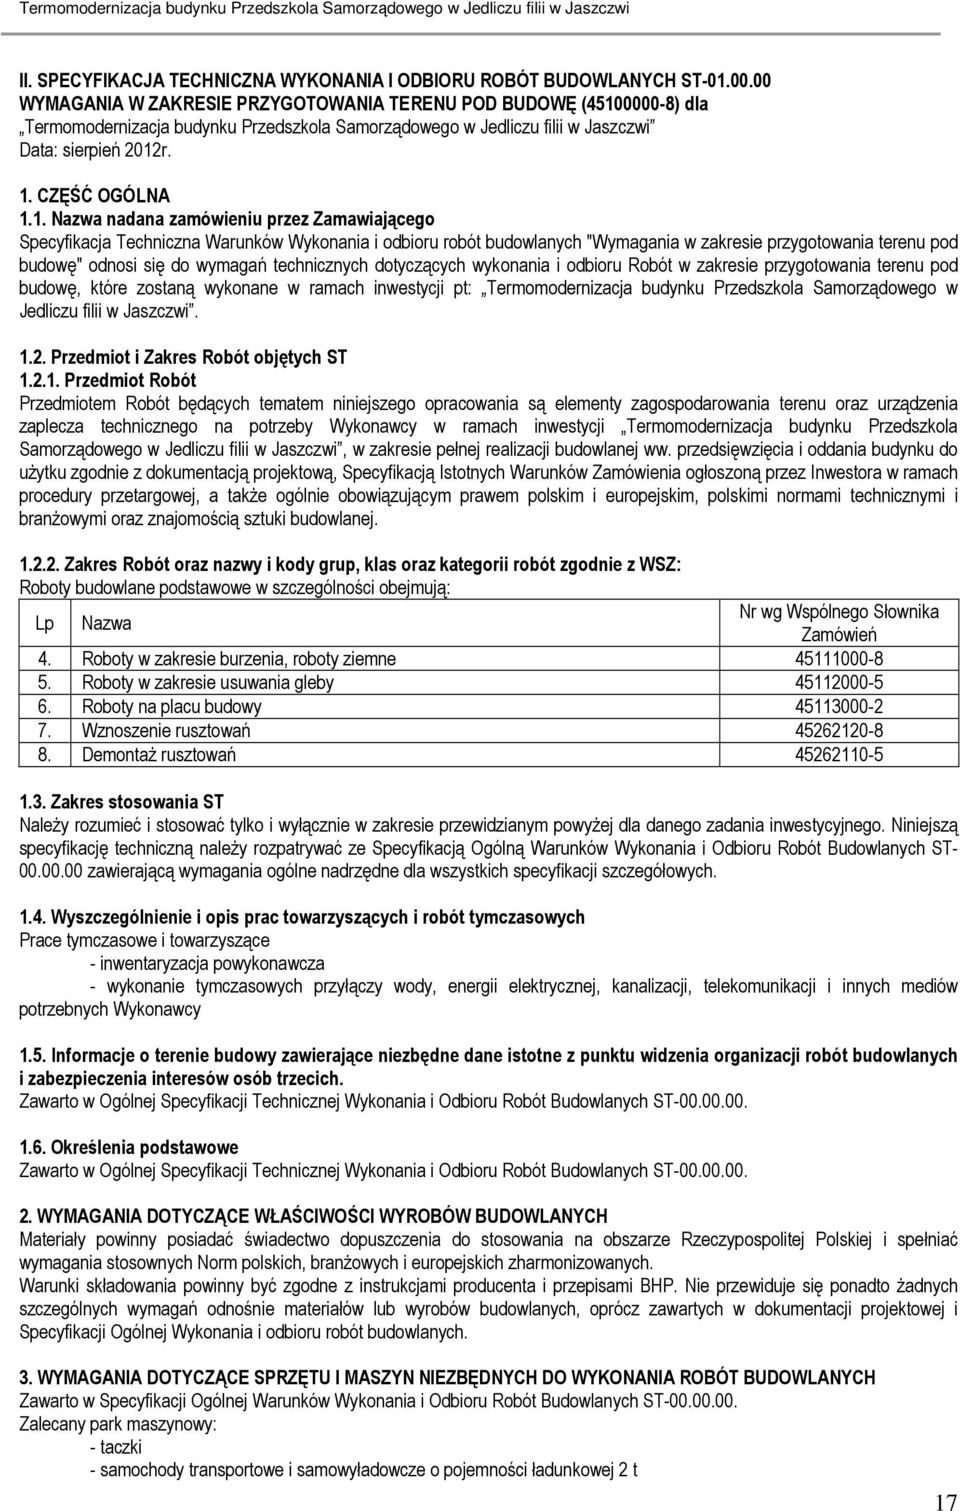 0000-8) dla Termomodernizacja budynku Przedszkola Samorządowego w Jedliczu filii w Jaszczwi Data: sierpień 2012